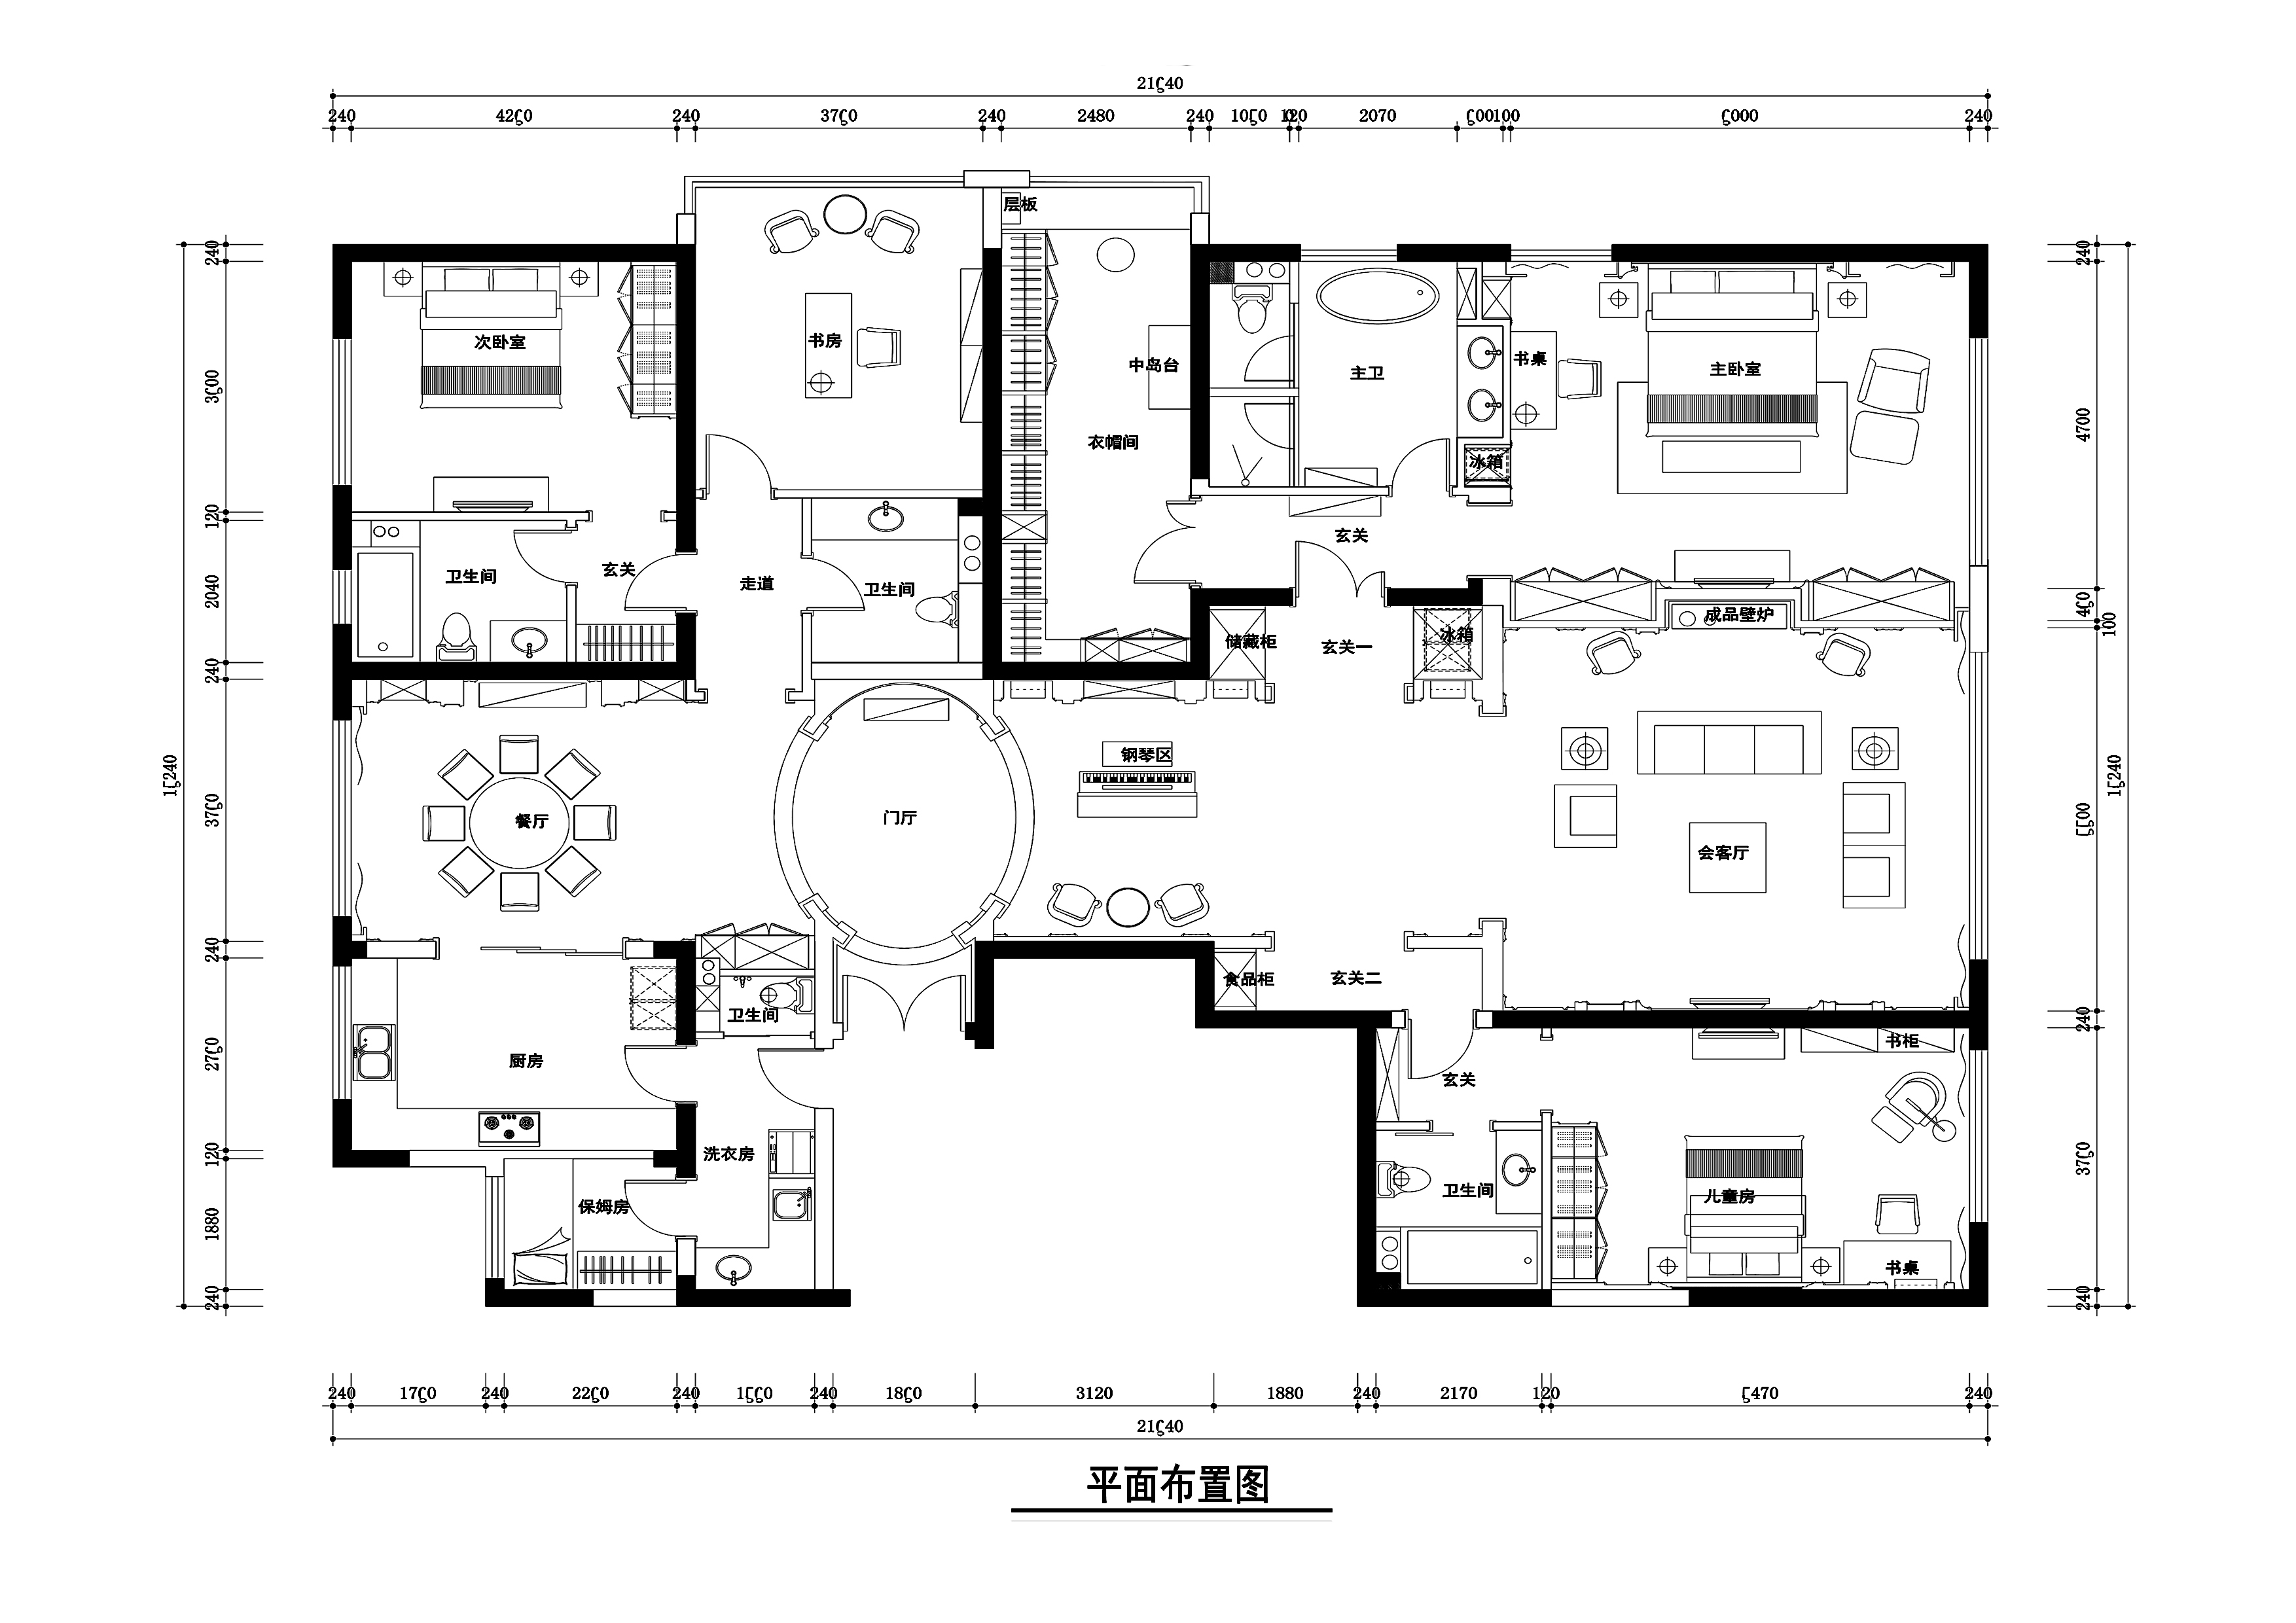 【北京】欧式大型四室三厅平层公寓装修施工图